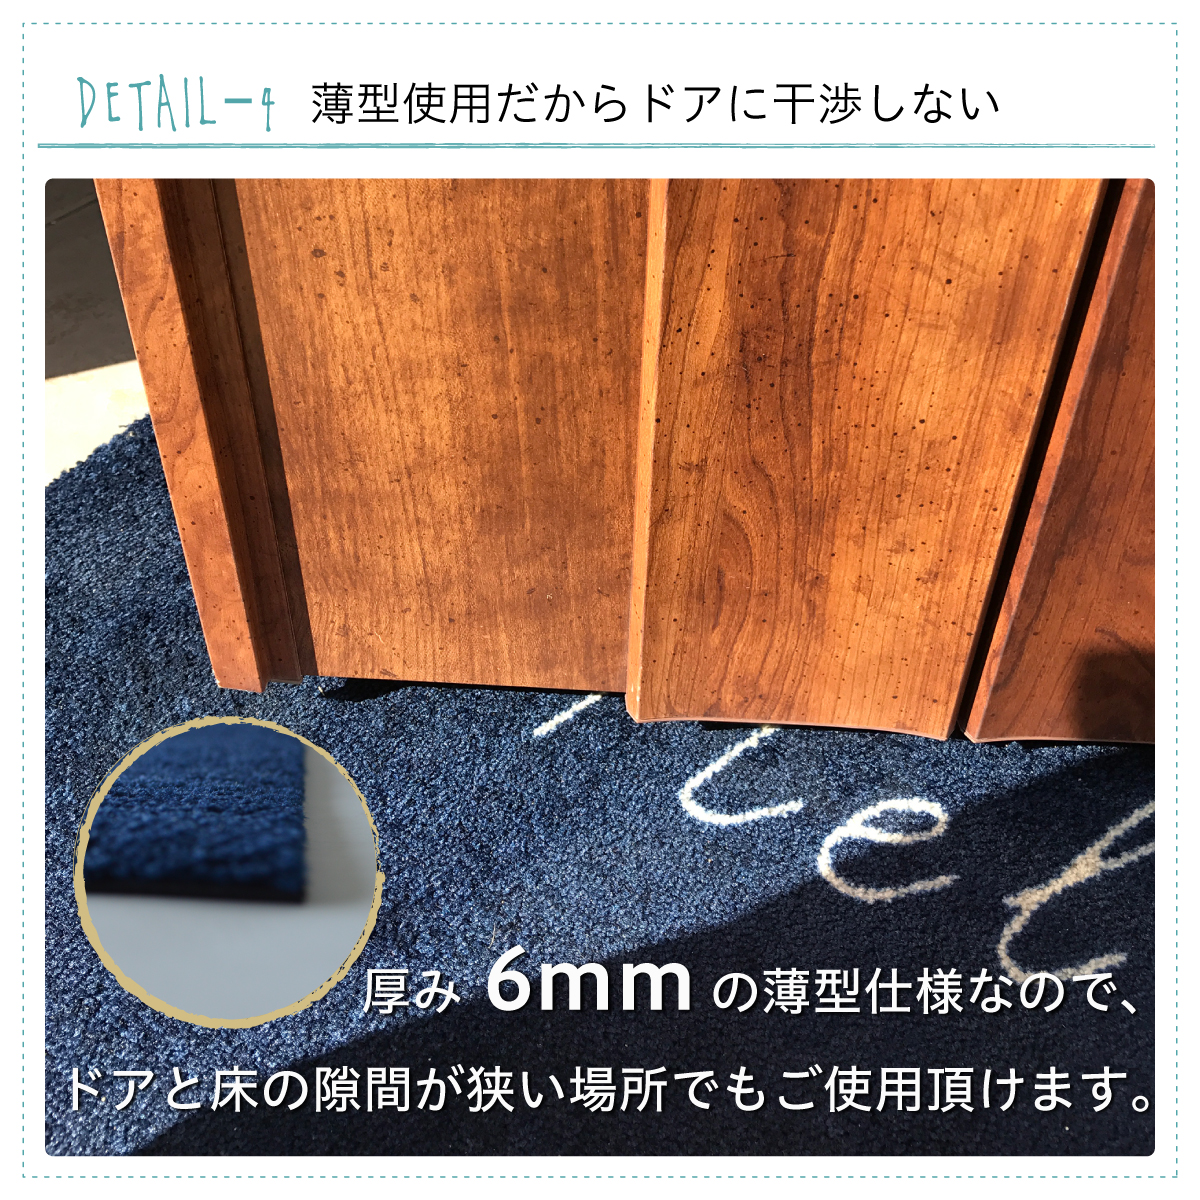 【楽天市場】玄関マット WELCOME MAT 60×90cm | 屋外 室内 屋内 洗える 薄型 滑り止め 店舗 おしゃれ ウェルカム ドアマット いらっしゃいませ 日本製 クリーンテックス